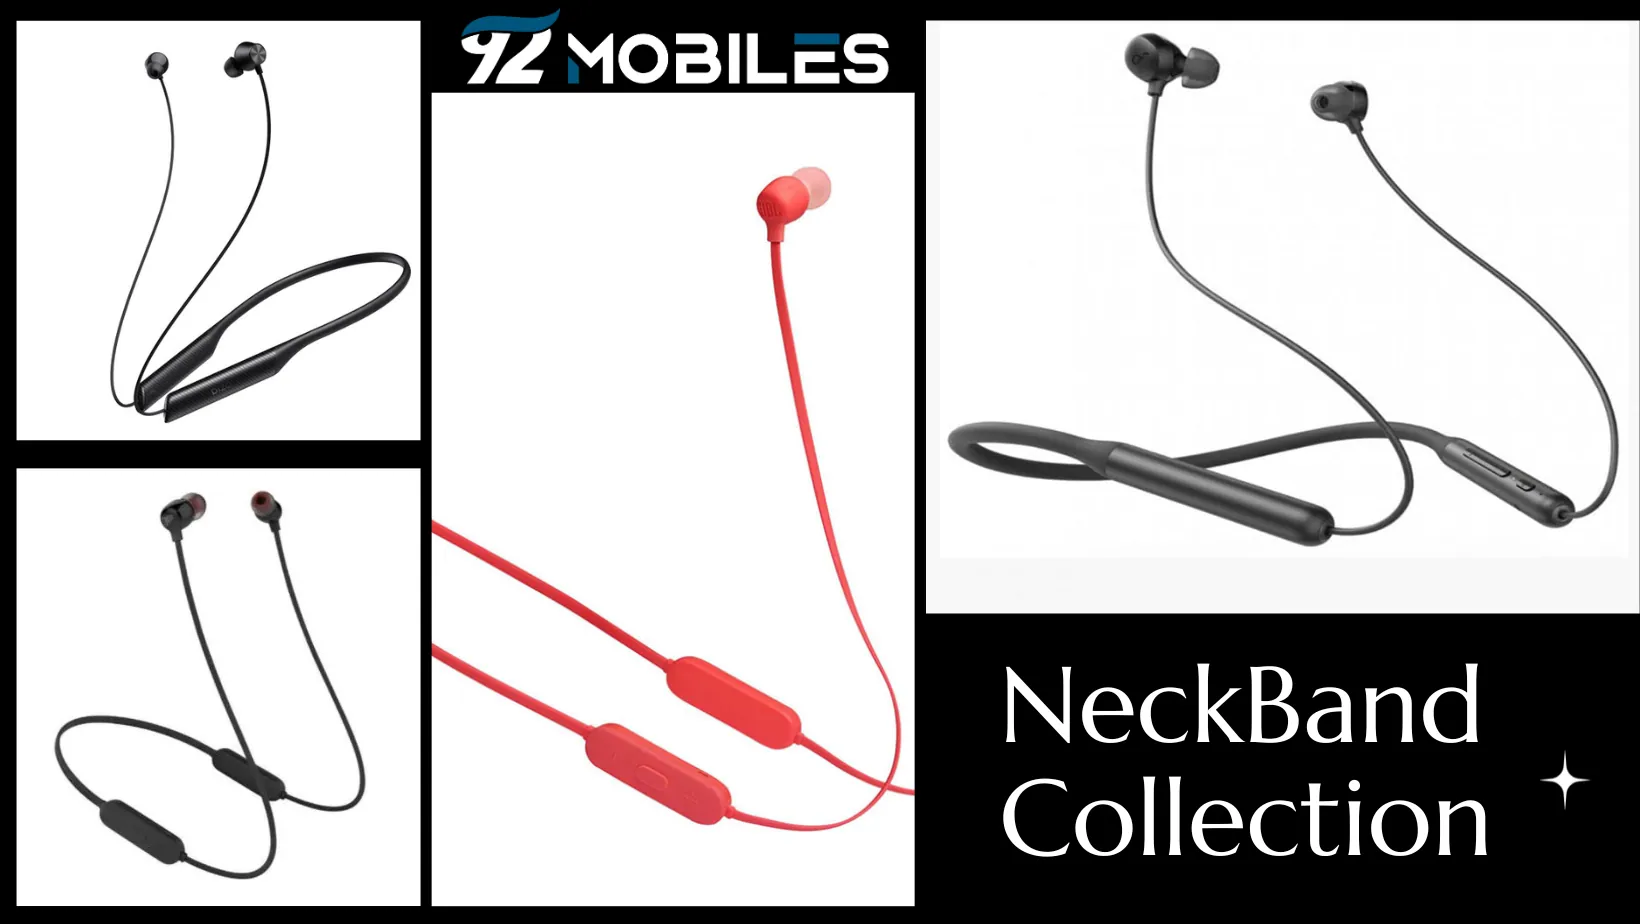 neckband wireless earphones in pakistan